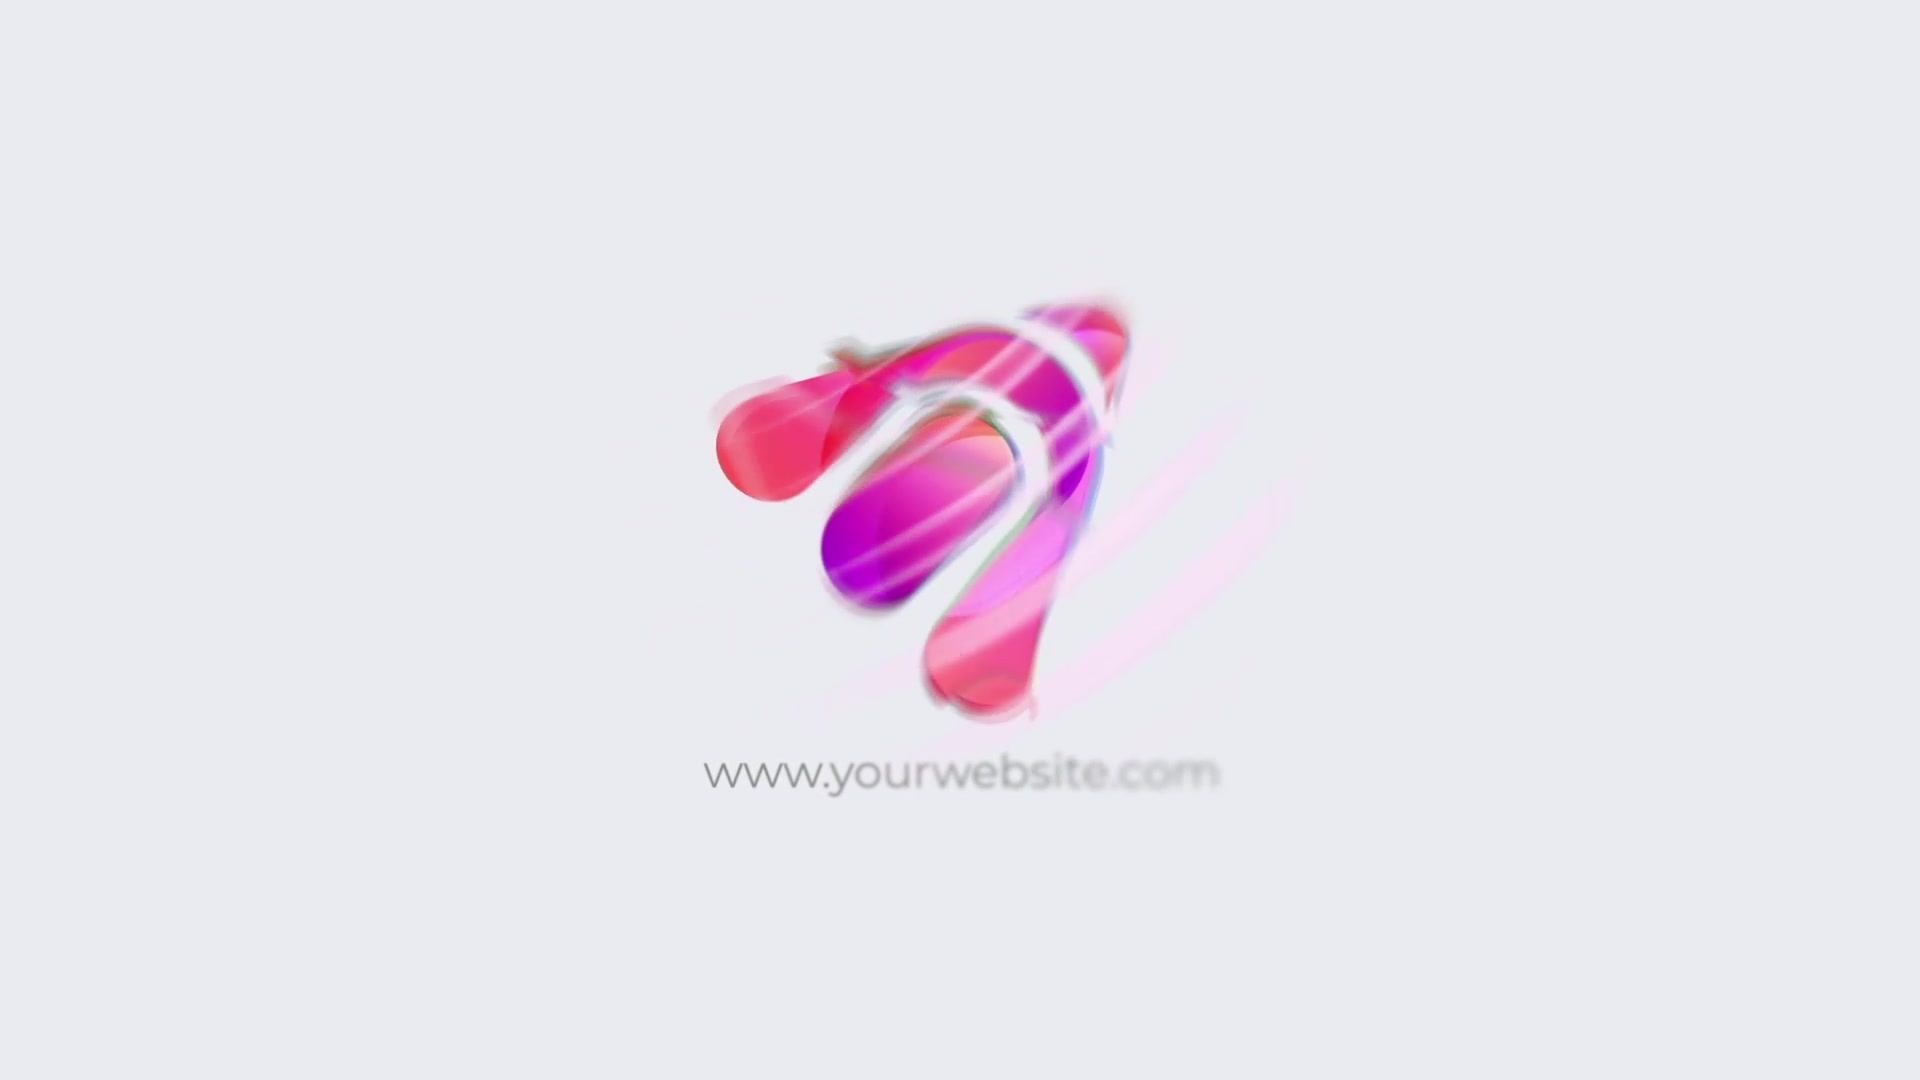 Liquid Glitch Logo for Premiere Pro Videohive 33154357 Premiere Pro Image 2